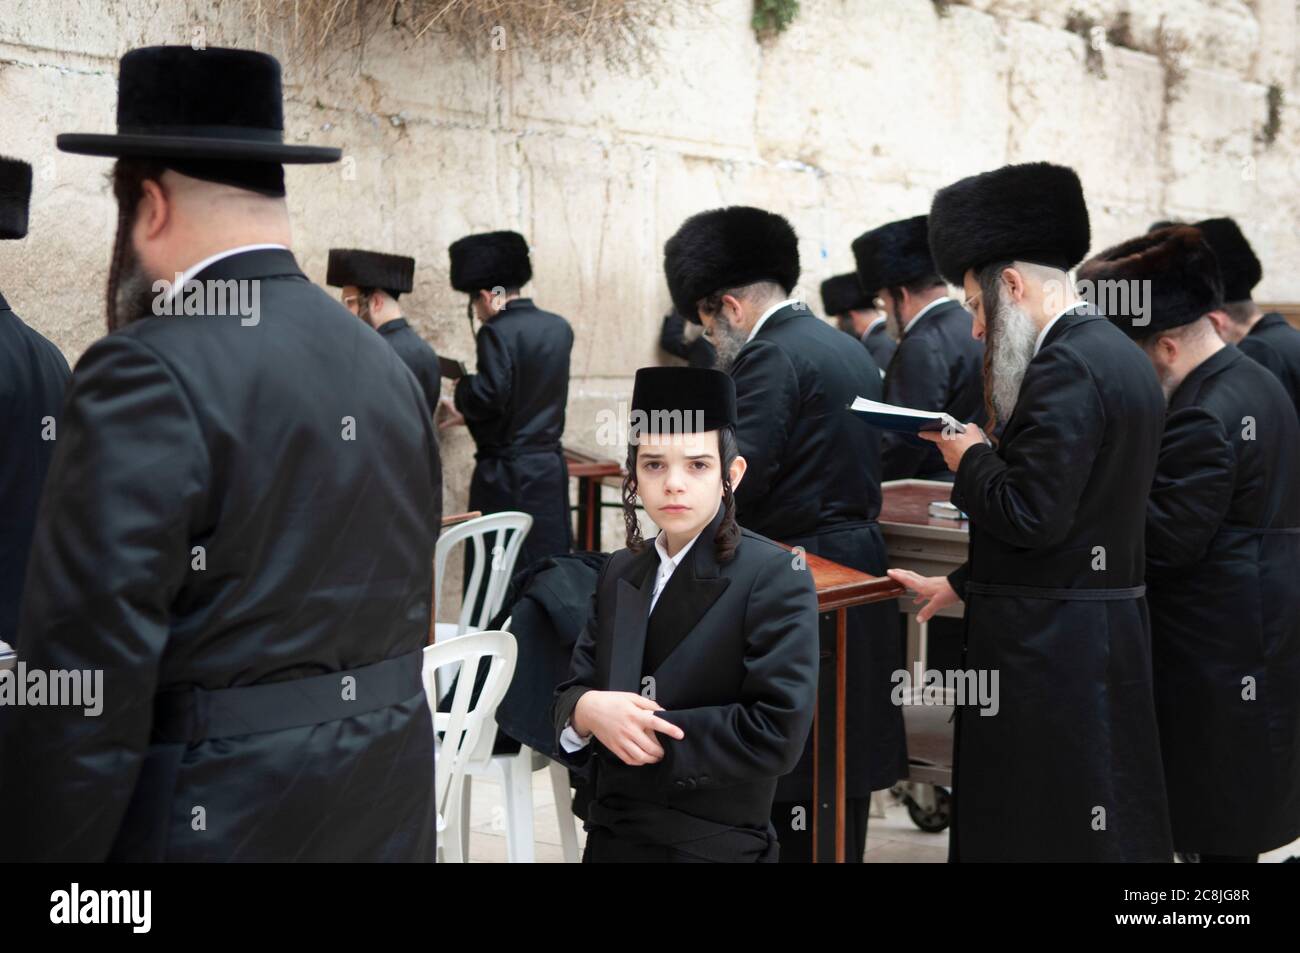 Jérusalem, Israël, mur des lamentations, jeune juif orthodoxe hassidique regardant la caméra entourée de nombreux juifs orthodoxes hassidiques plus anciens au mur des lamentations. Banque D'Images